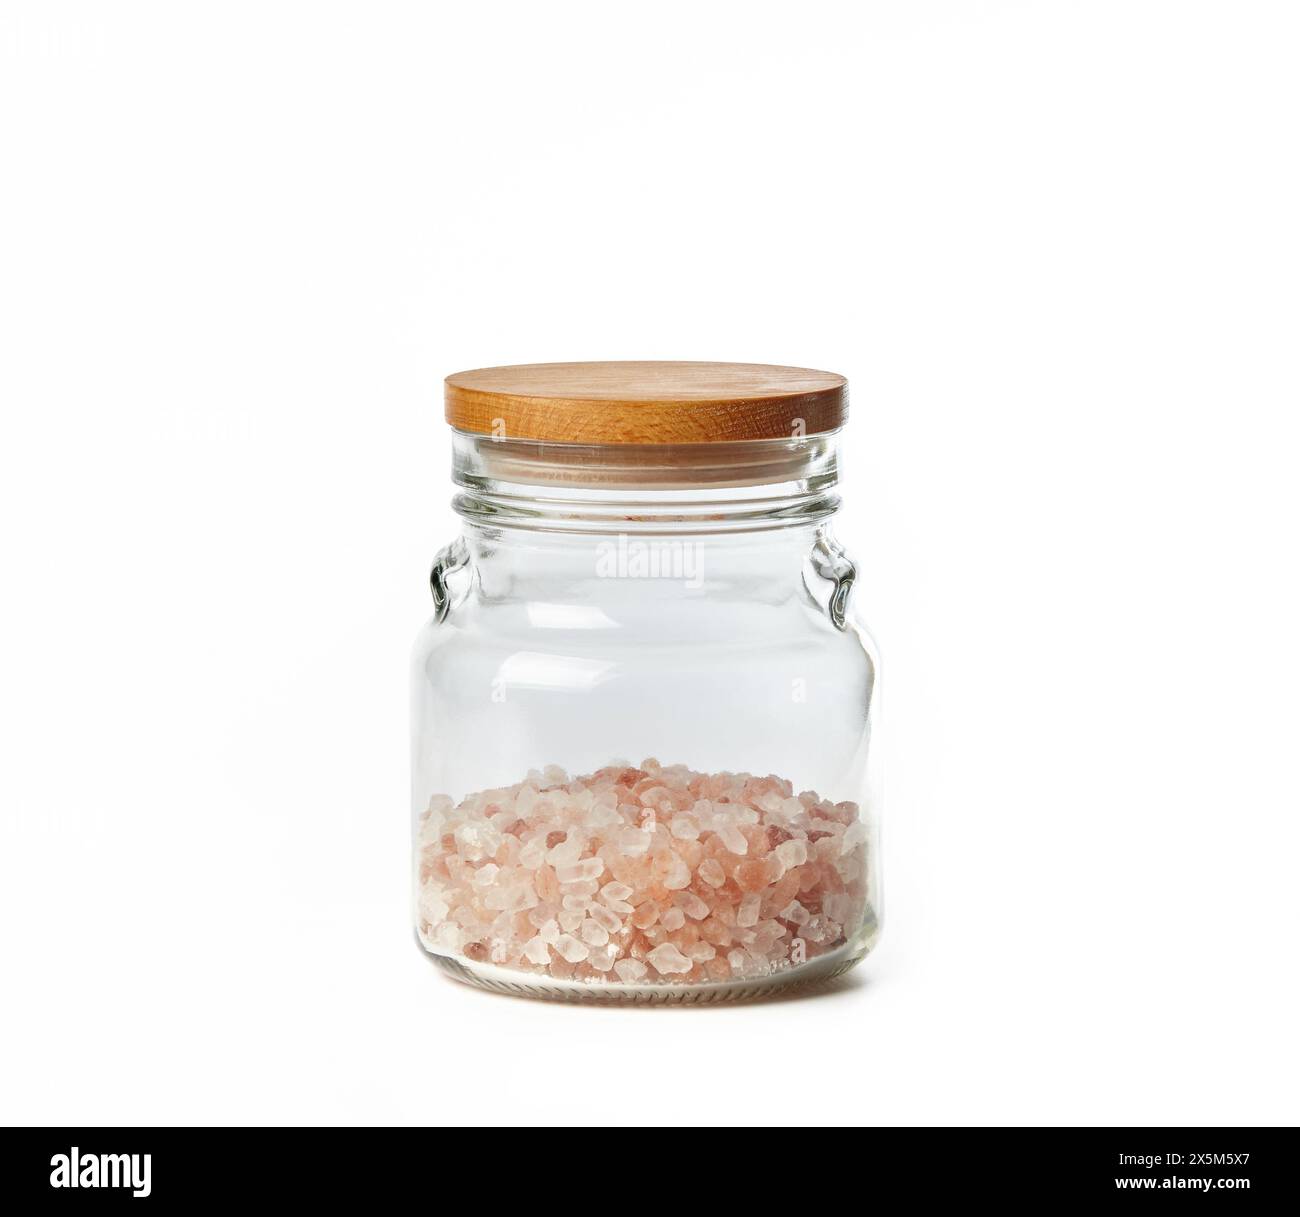 Himalaya-rosa Salz in Glasgefäß isoliert auf weißem Hintergrund. Gourmet-Salz - rote himalaya-Sorte Stockfoto